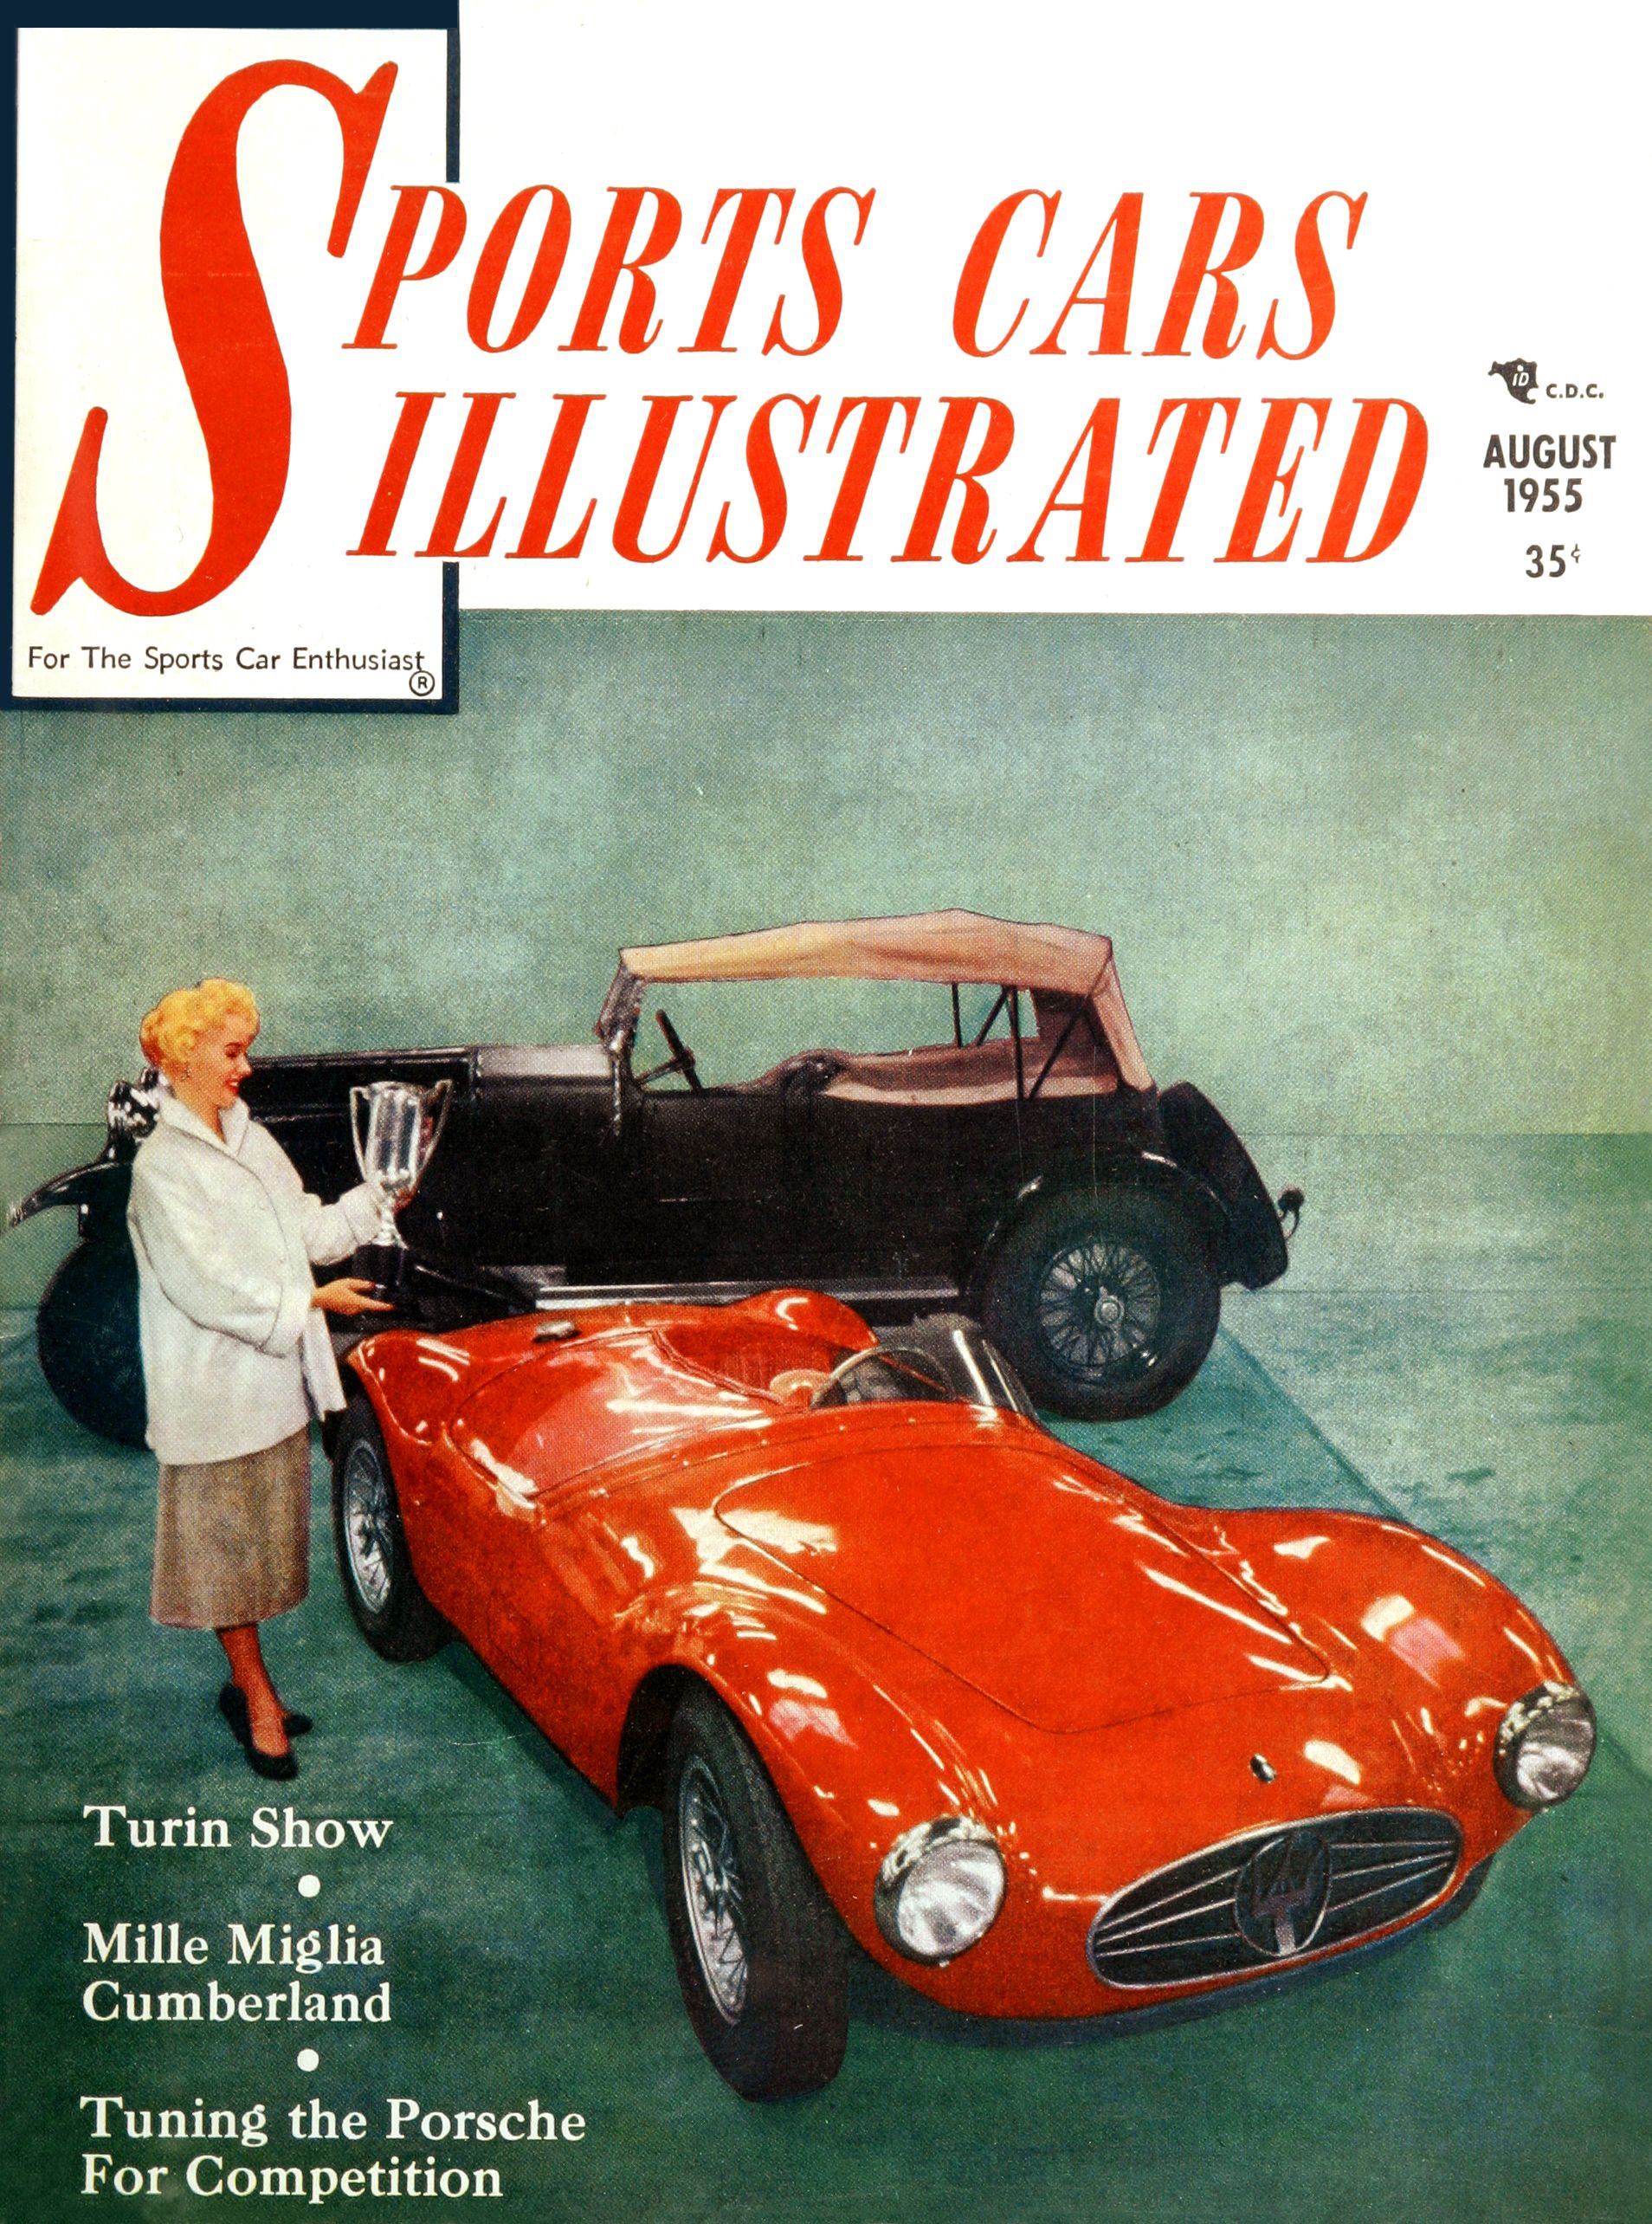 Et typisk cover fra Sports Cars Illustrated i 1955, med det som ble regnet som ekte sportsbiler på coveret.